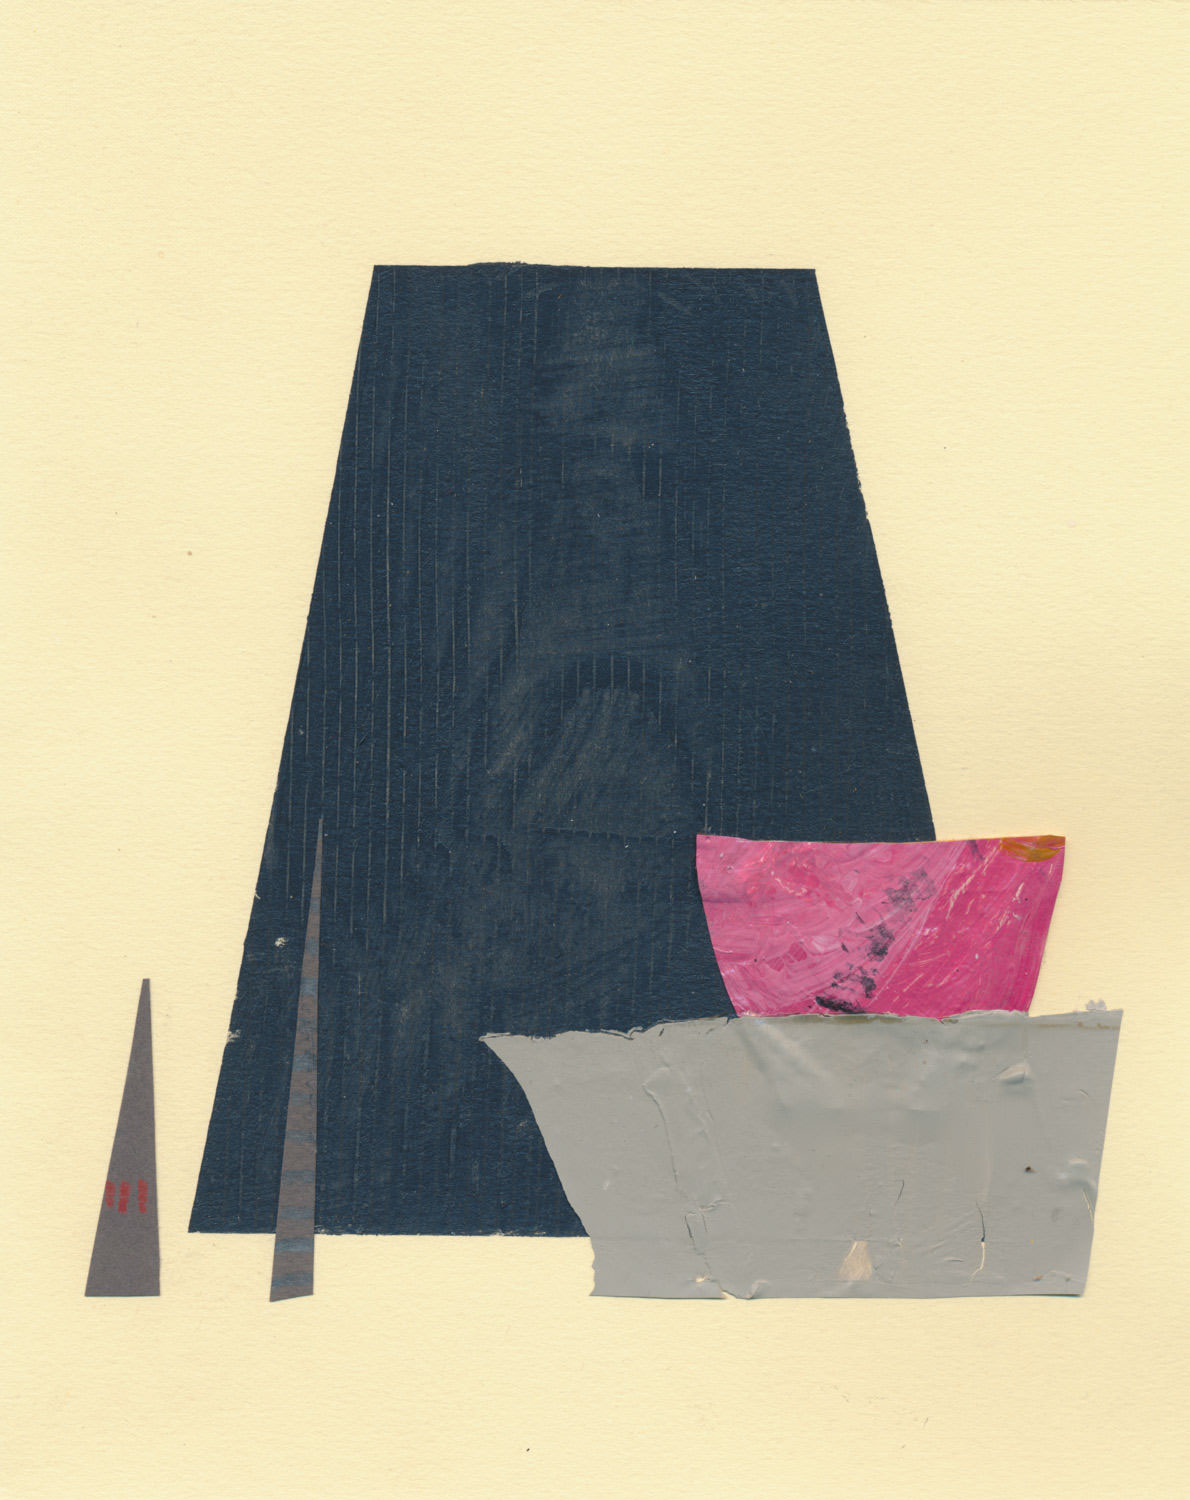 artwork collage constructivism Suprematism futurist Dada paper scissors Glue